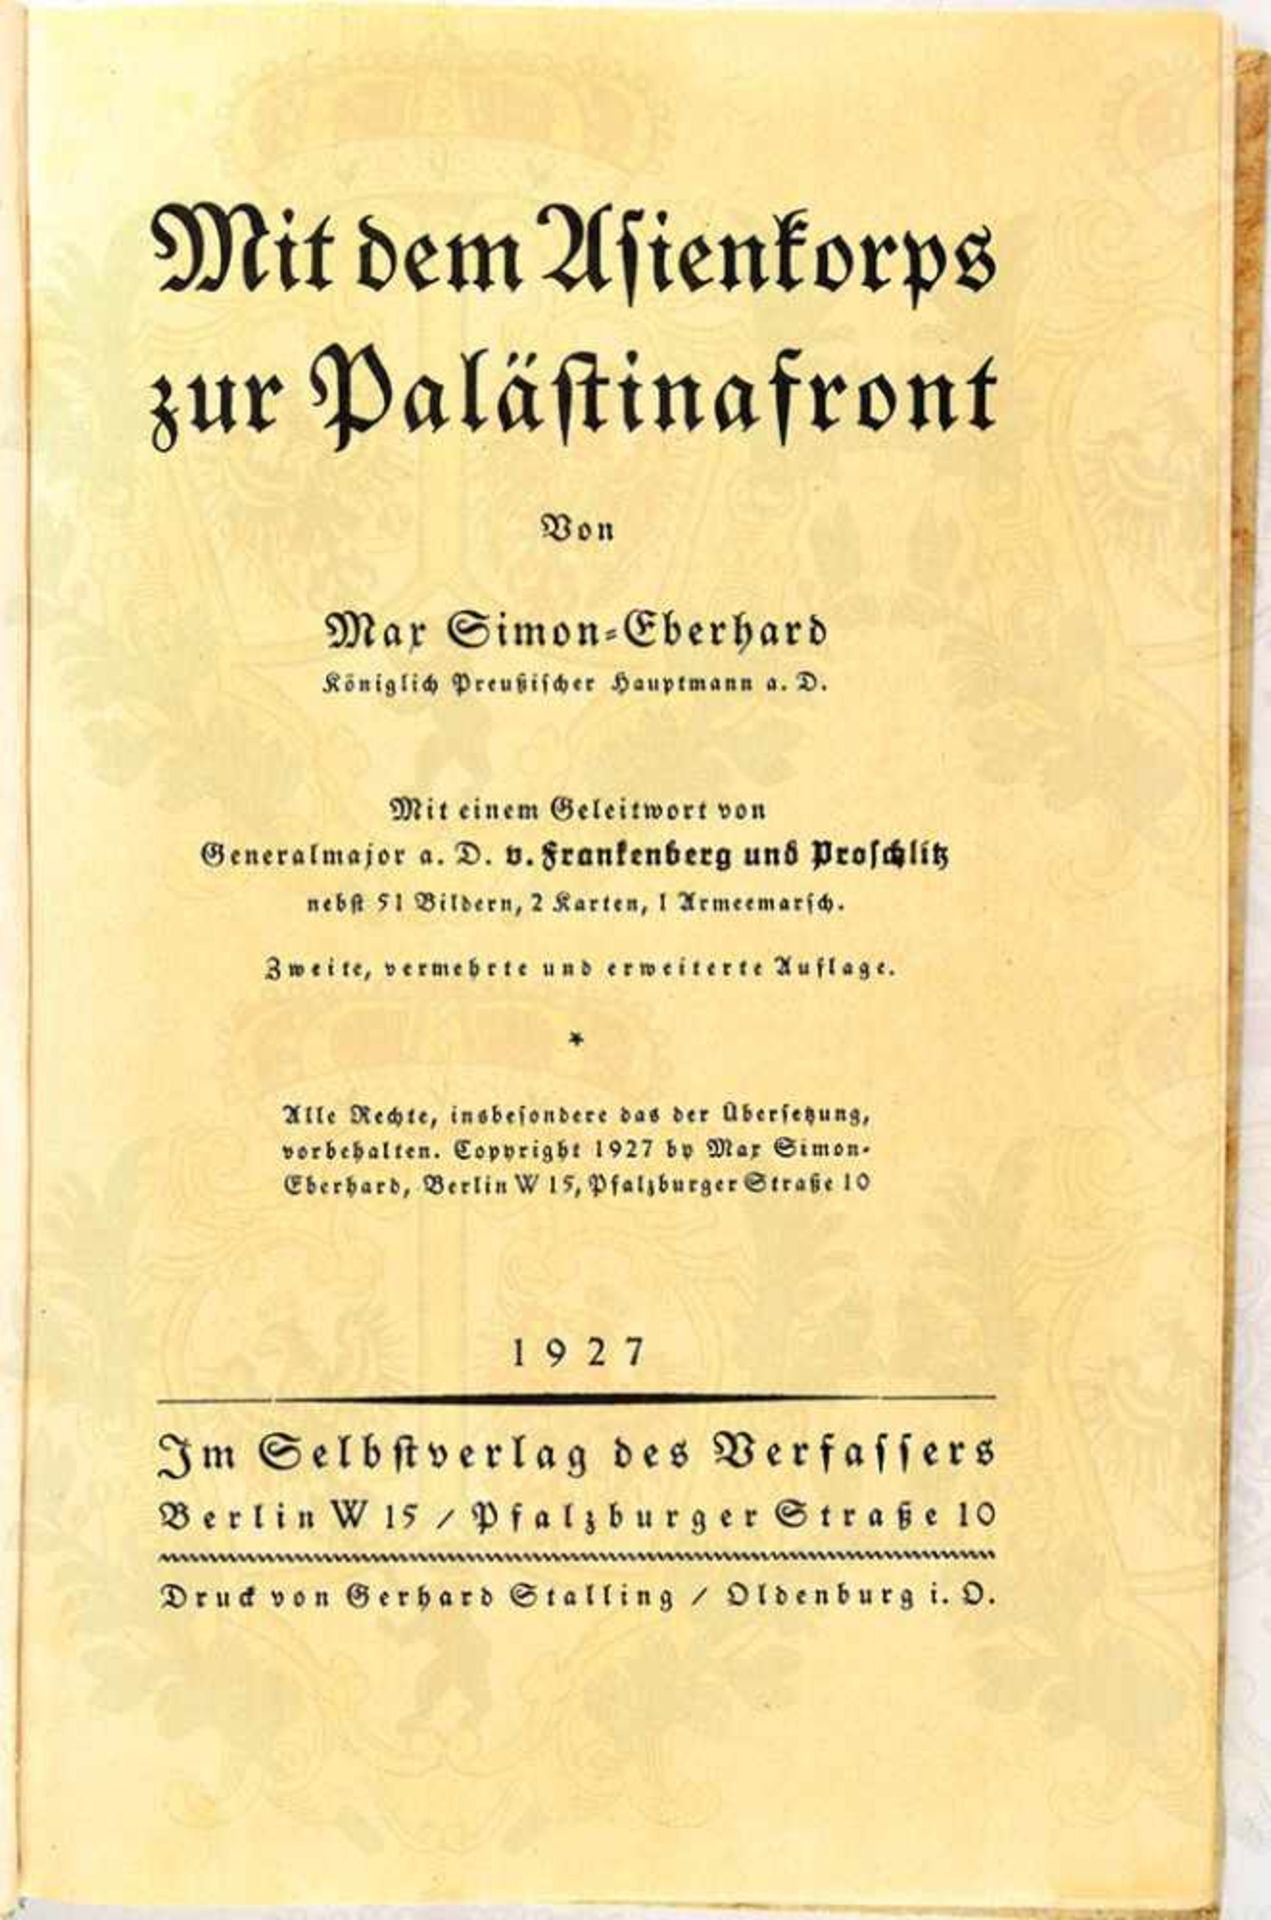 MIT DEM ASIENKORPS ZUR PALÄSTINAFRONT, Hptm. Max Simon-Eberhard, Selbstverlag, Berlin 1927, 136 - Bild 3 aus 4